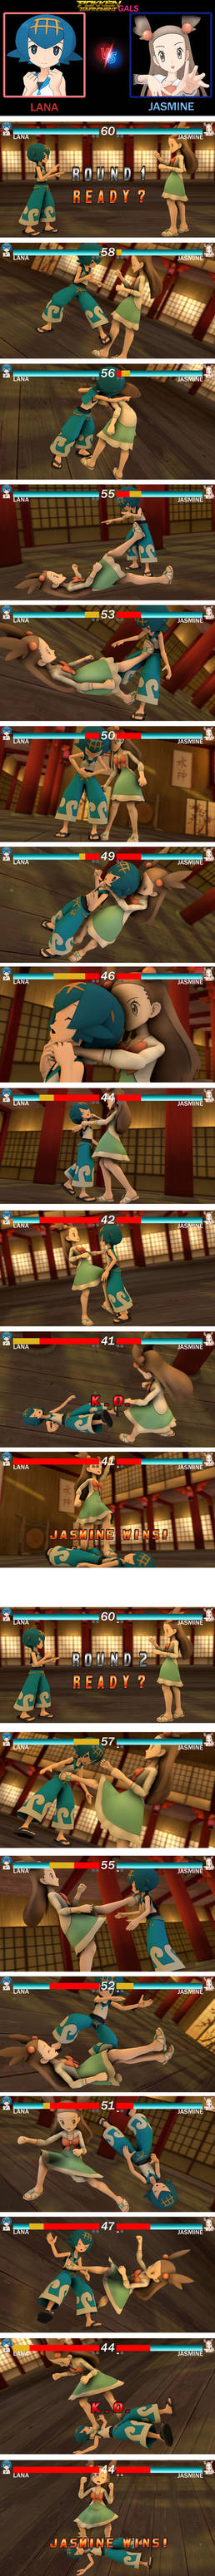 PokkenGals Tournament - Lana VS Jasmine